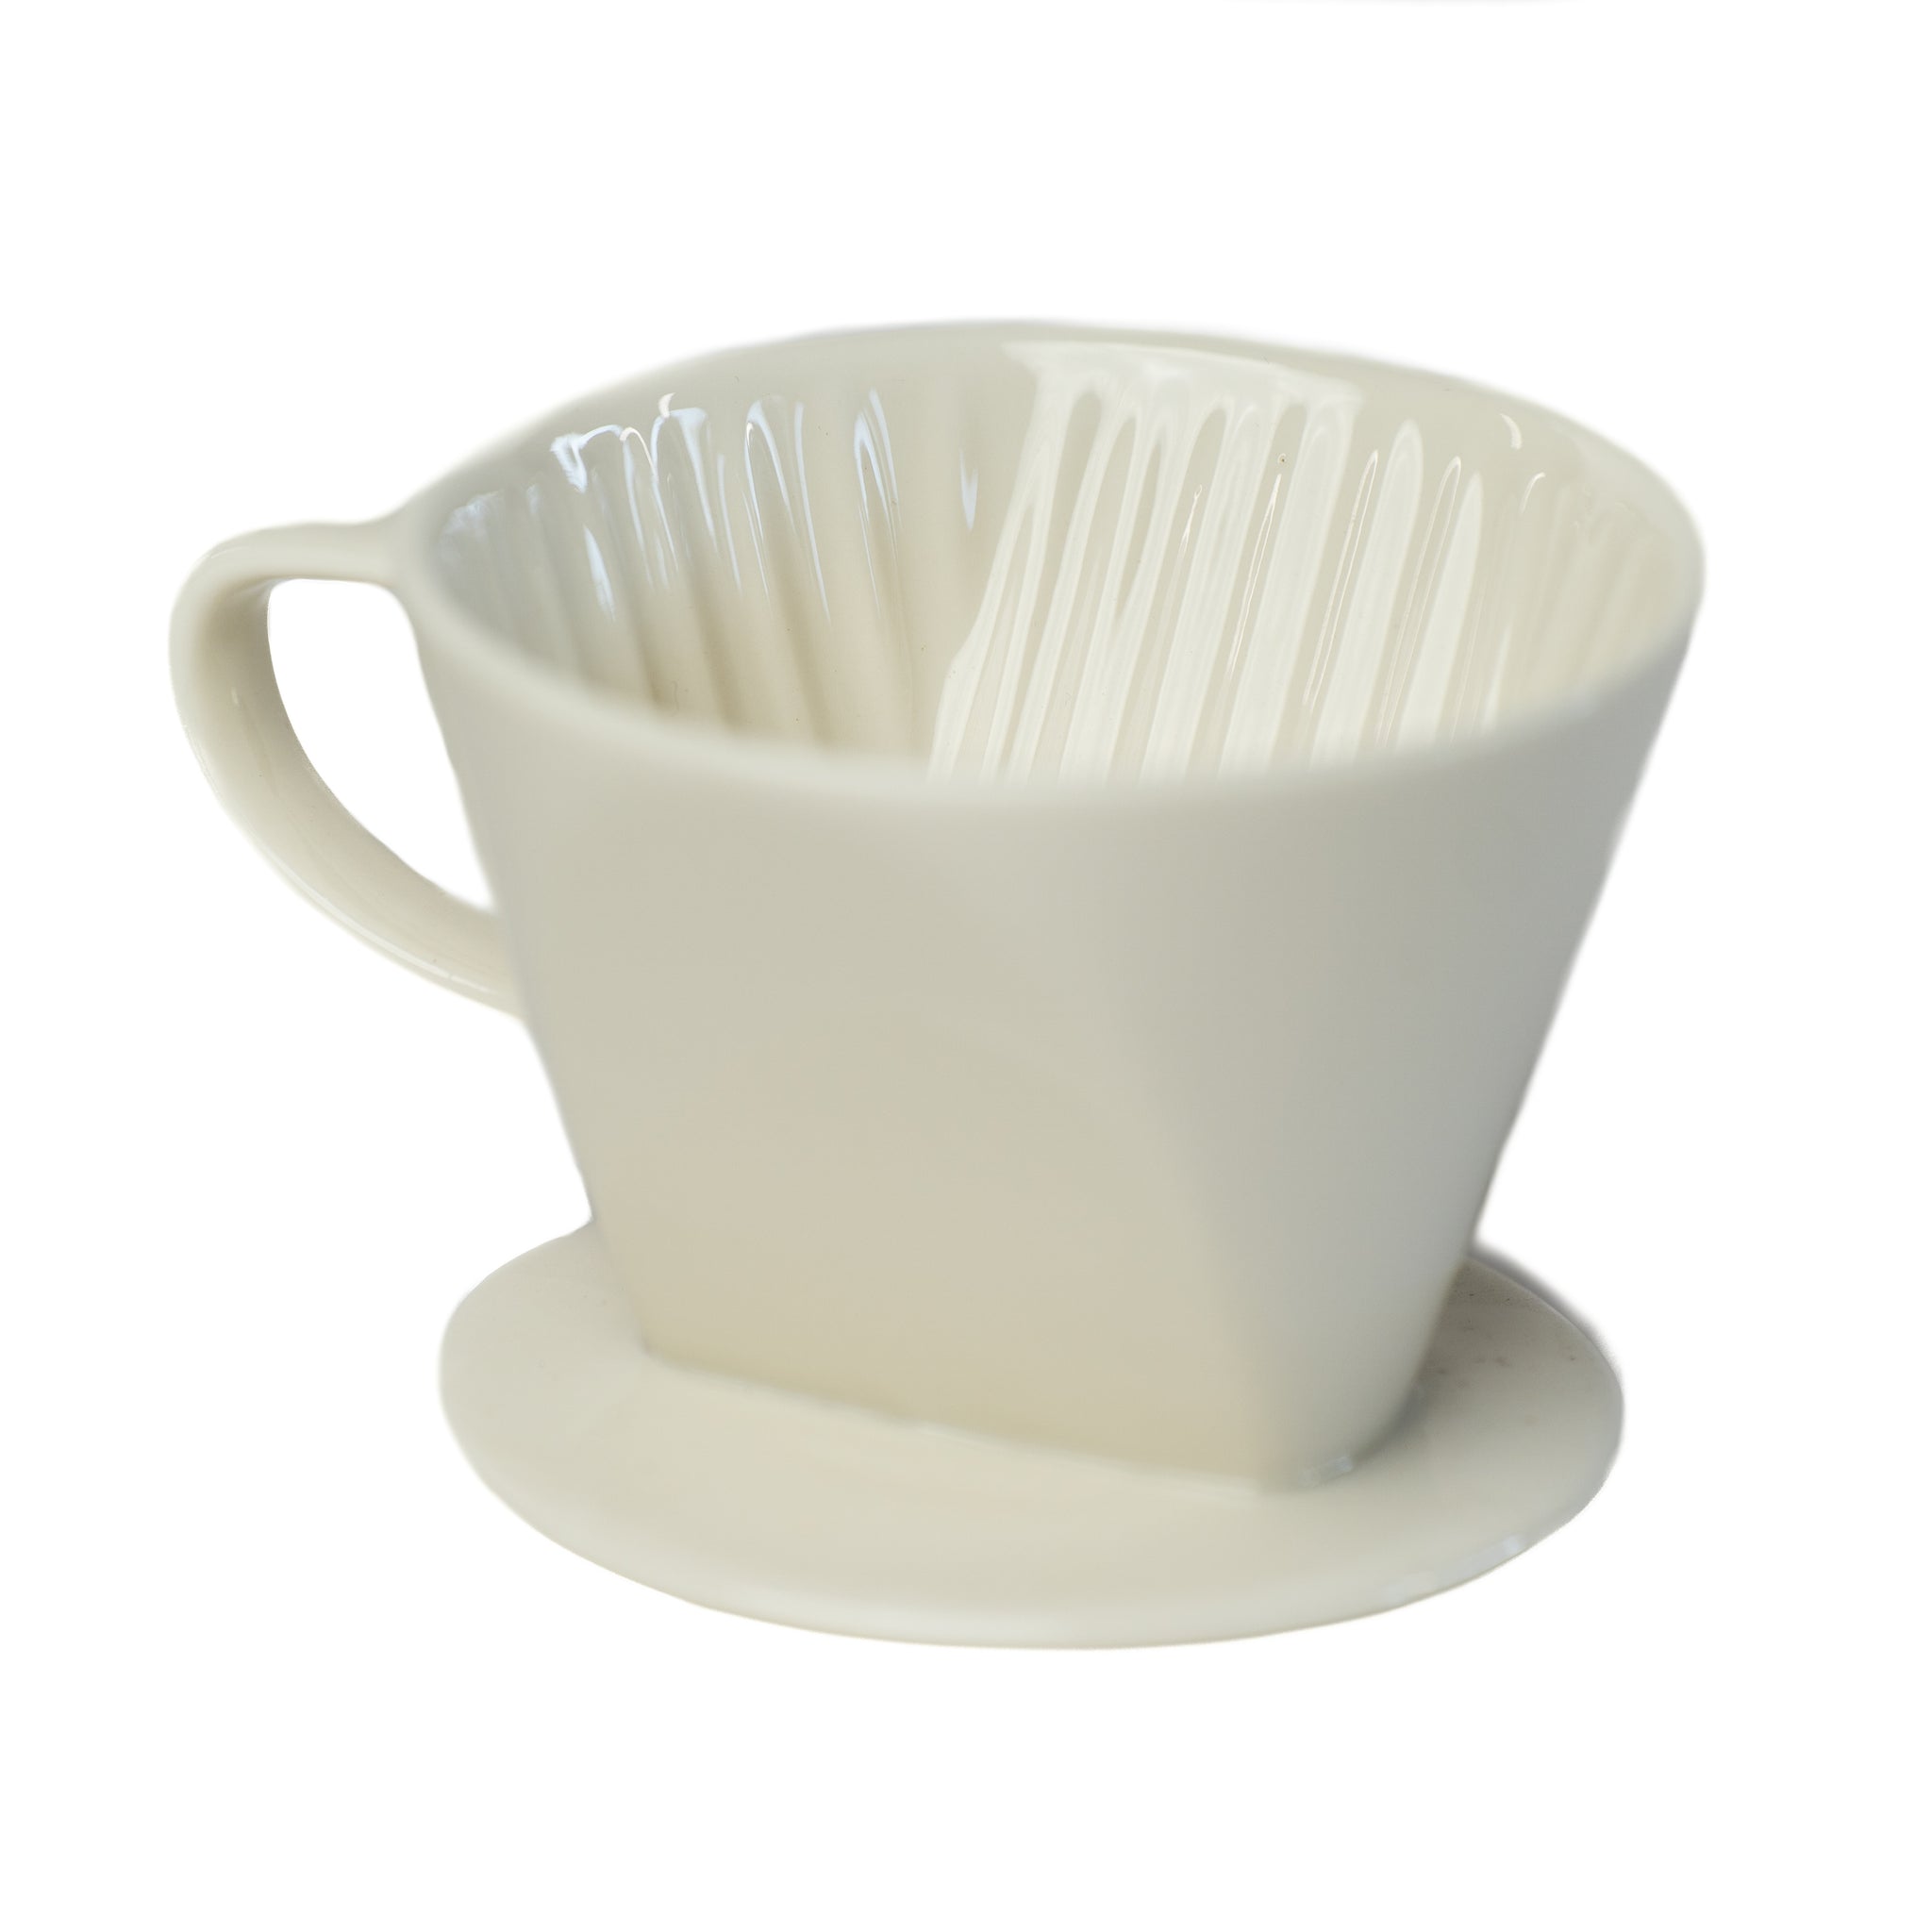  Hario V60 Ceramic Coffee Dripper Pour Over Cone Coffee